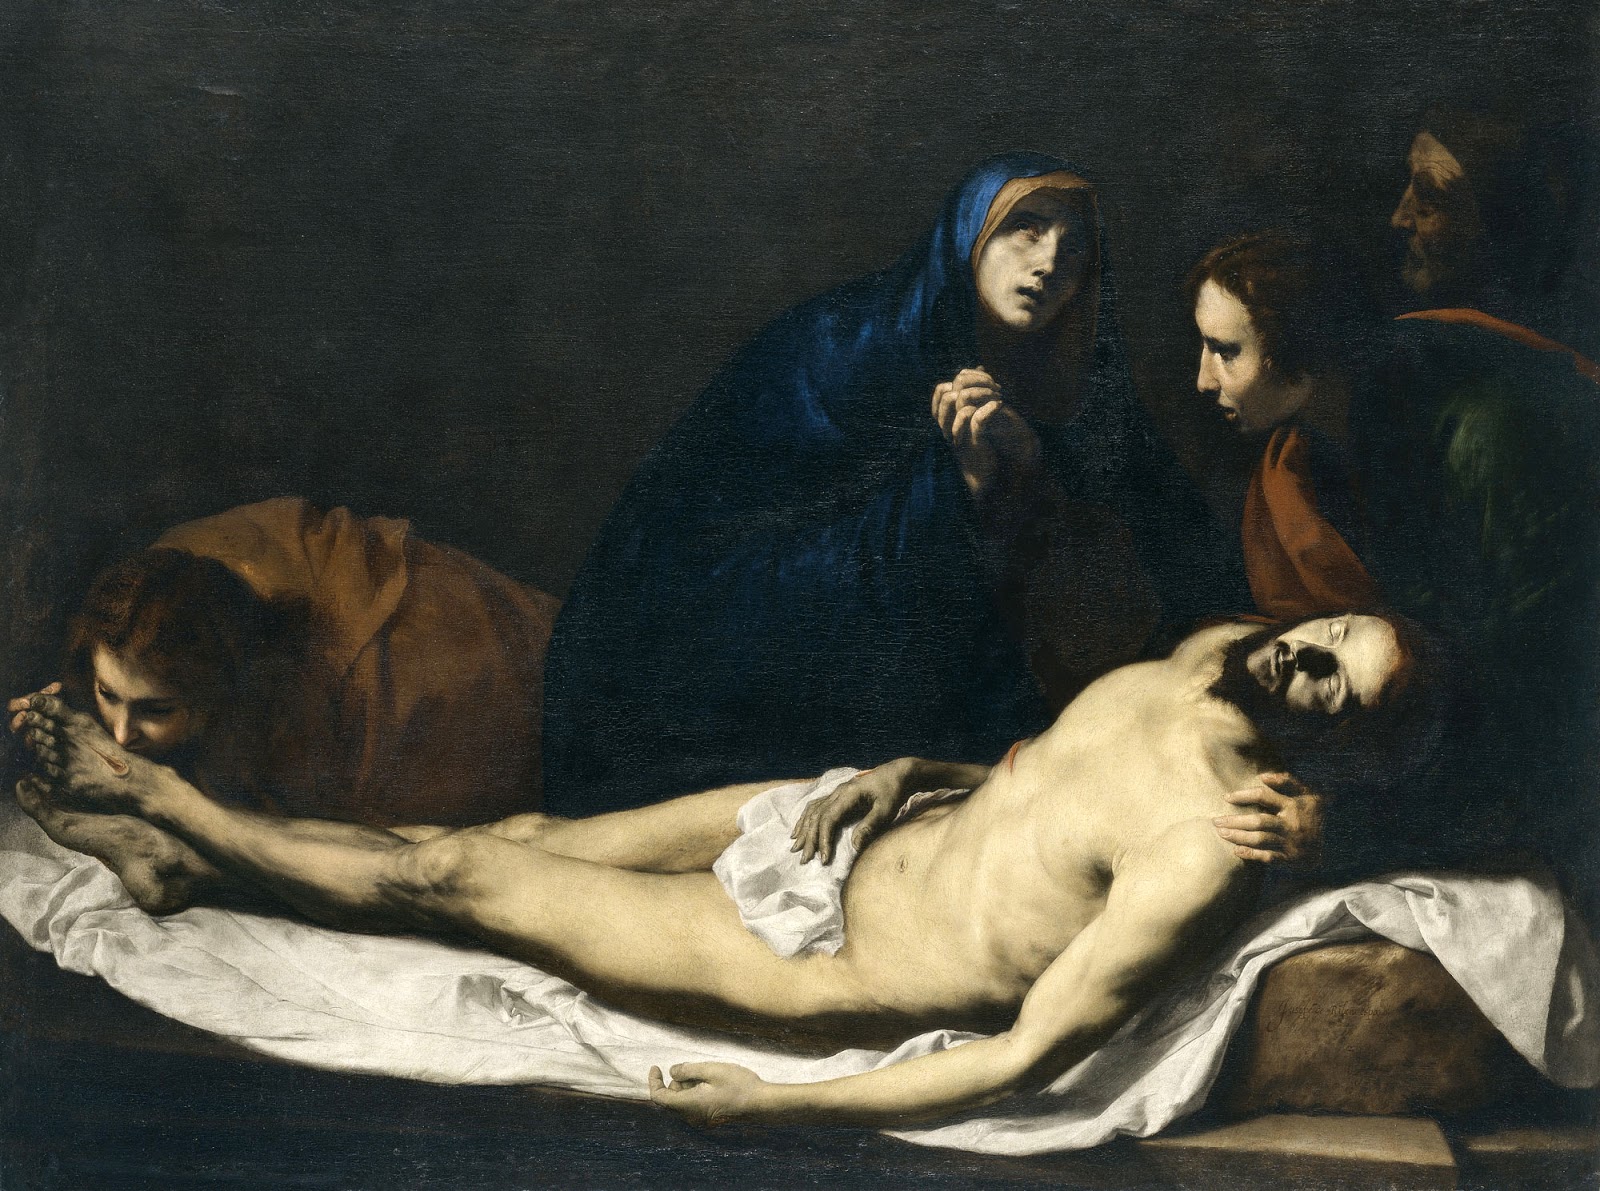 Jusepe+de+Ribera-1591-1652 (38).jpg